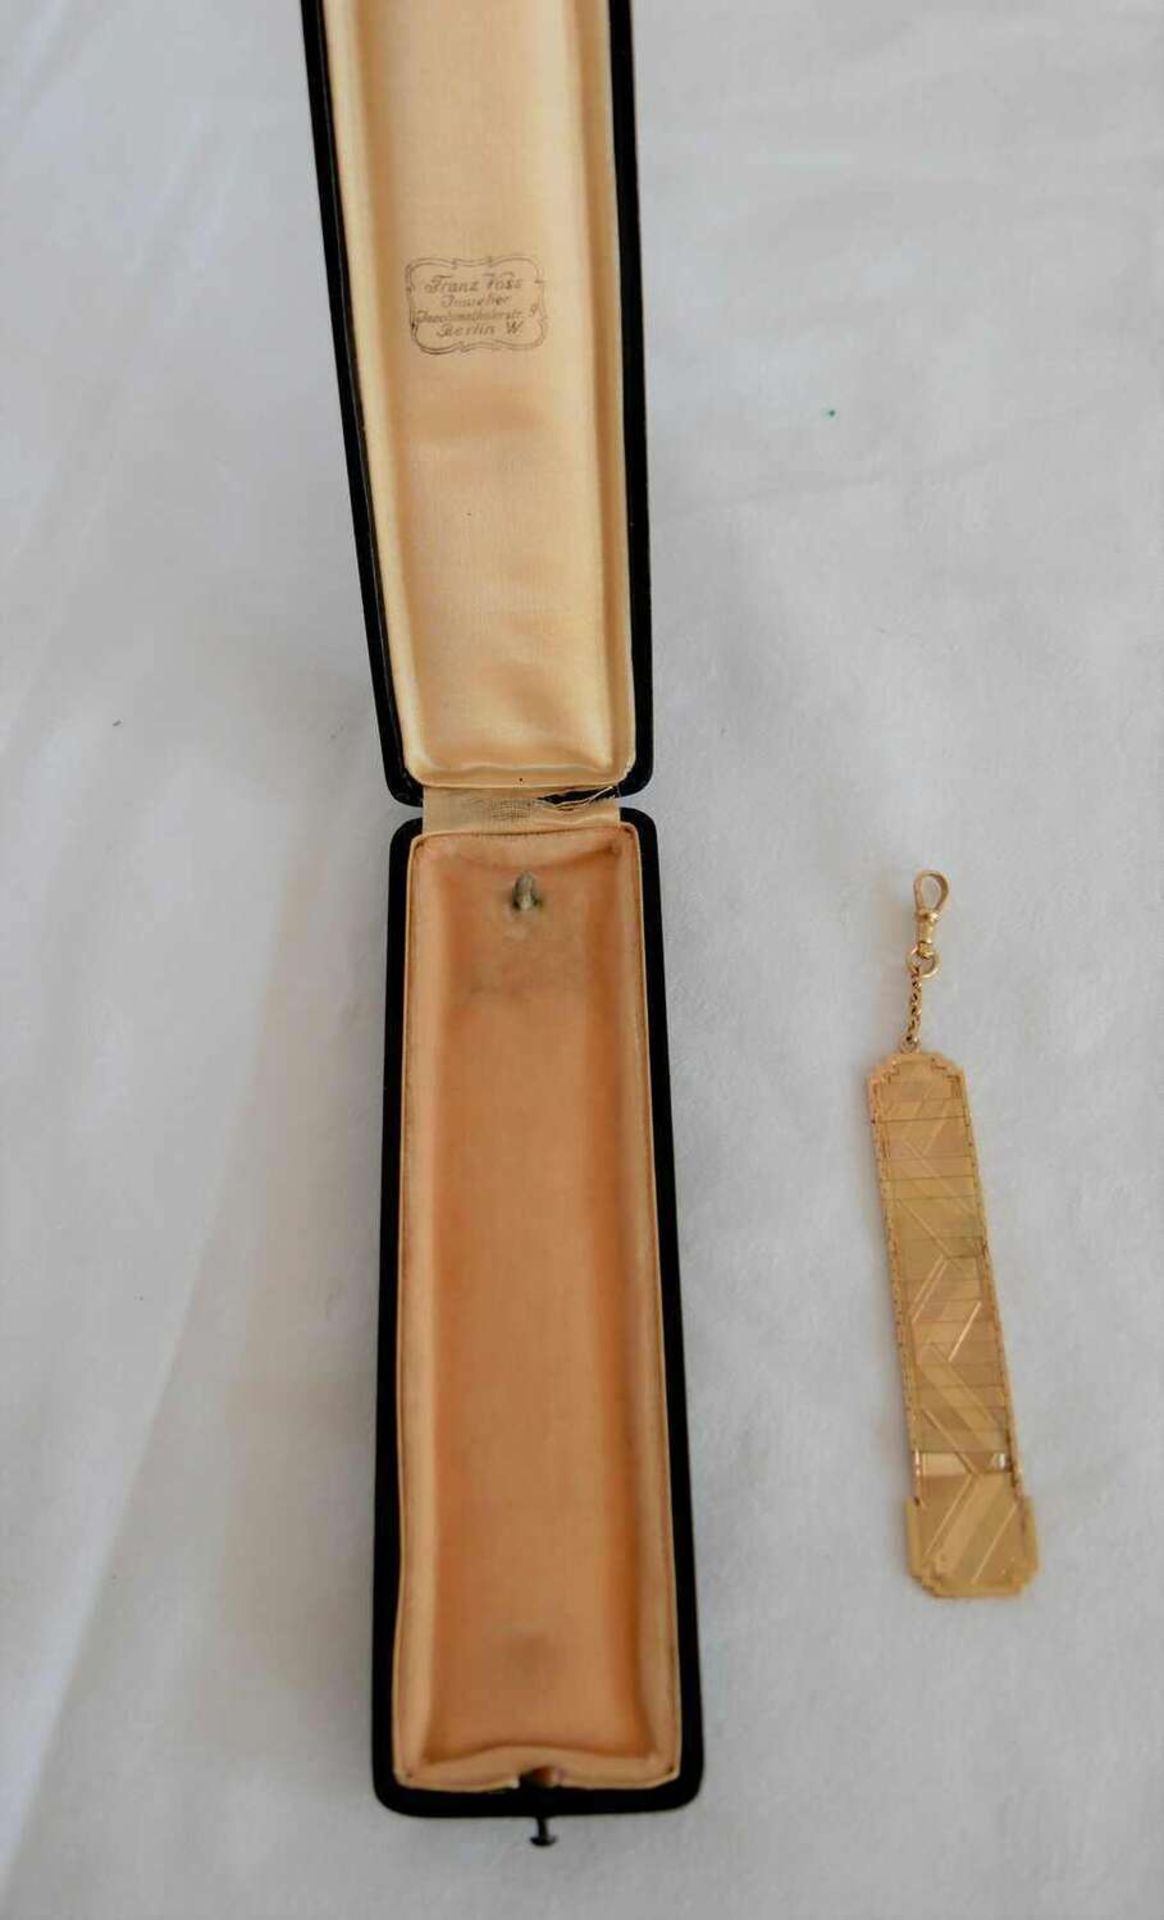 1 goldener Bierzipfel 14ct, geprüft im Original Etui, Gesamtlänge ca 11,5cm, Gewicht ca 9,63g. ,